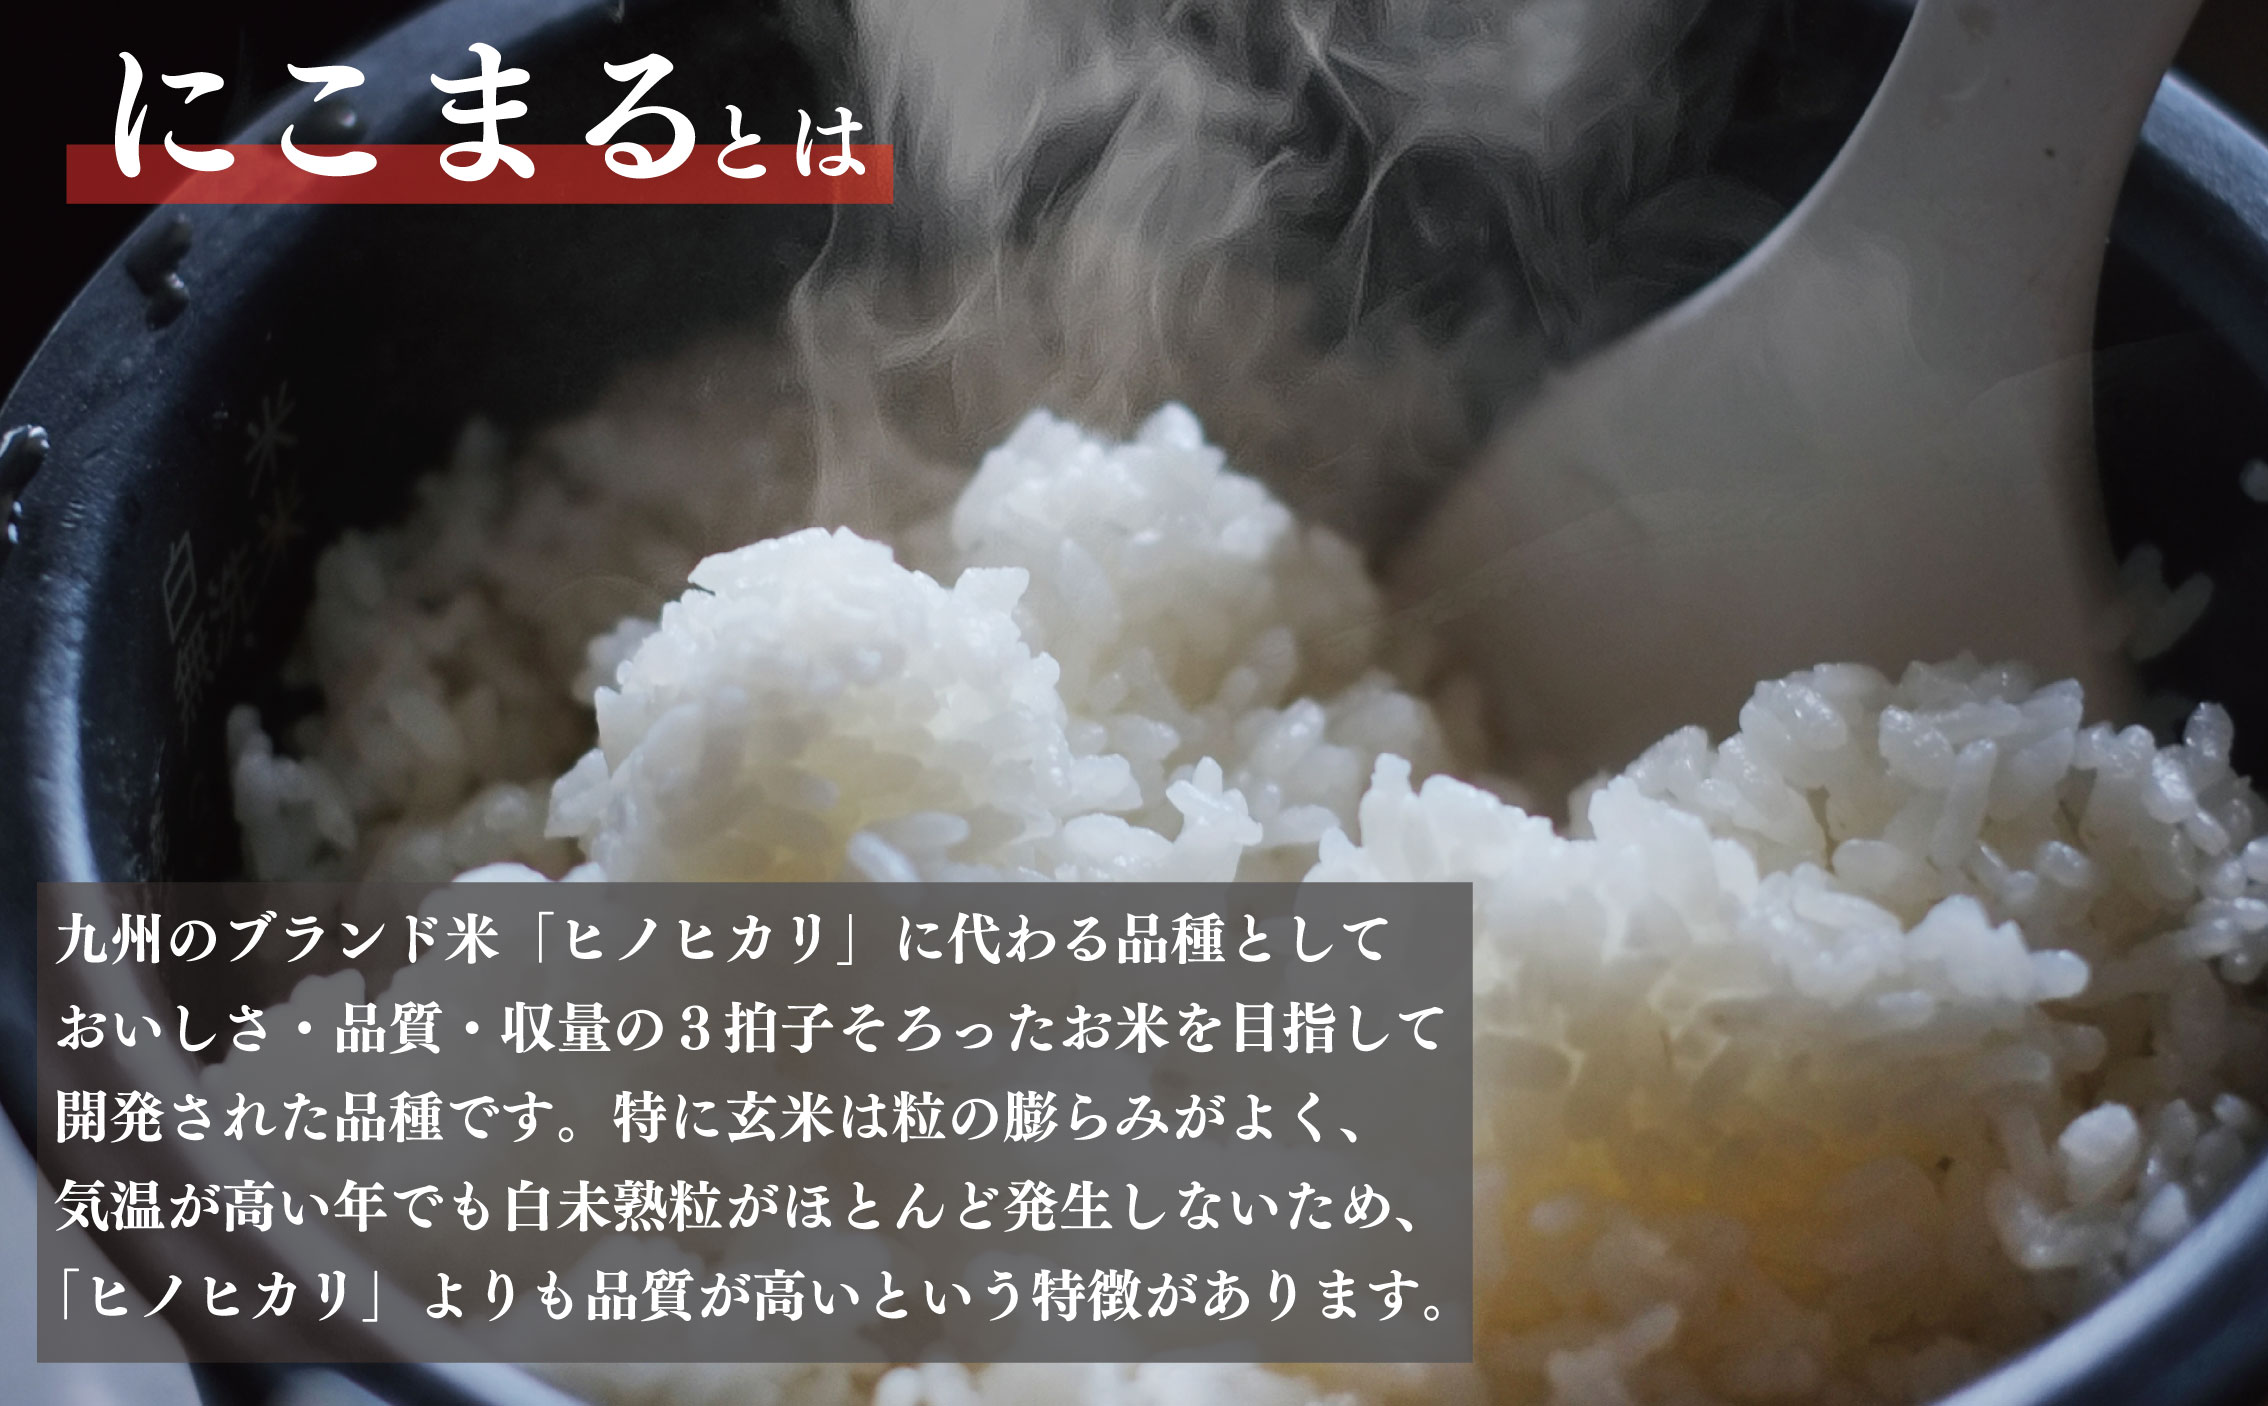 新米 玄米 約10kg 約10キロ お米 栽培期間中農薬不使用 にこまる 安心 安全 こだわり栽培 ビタミン ミネラル 食物繊維